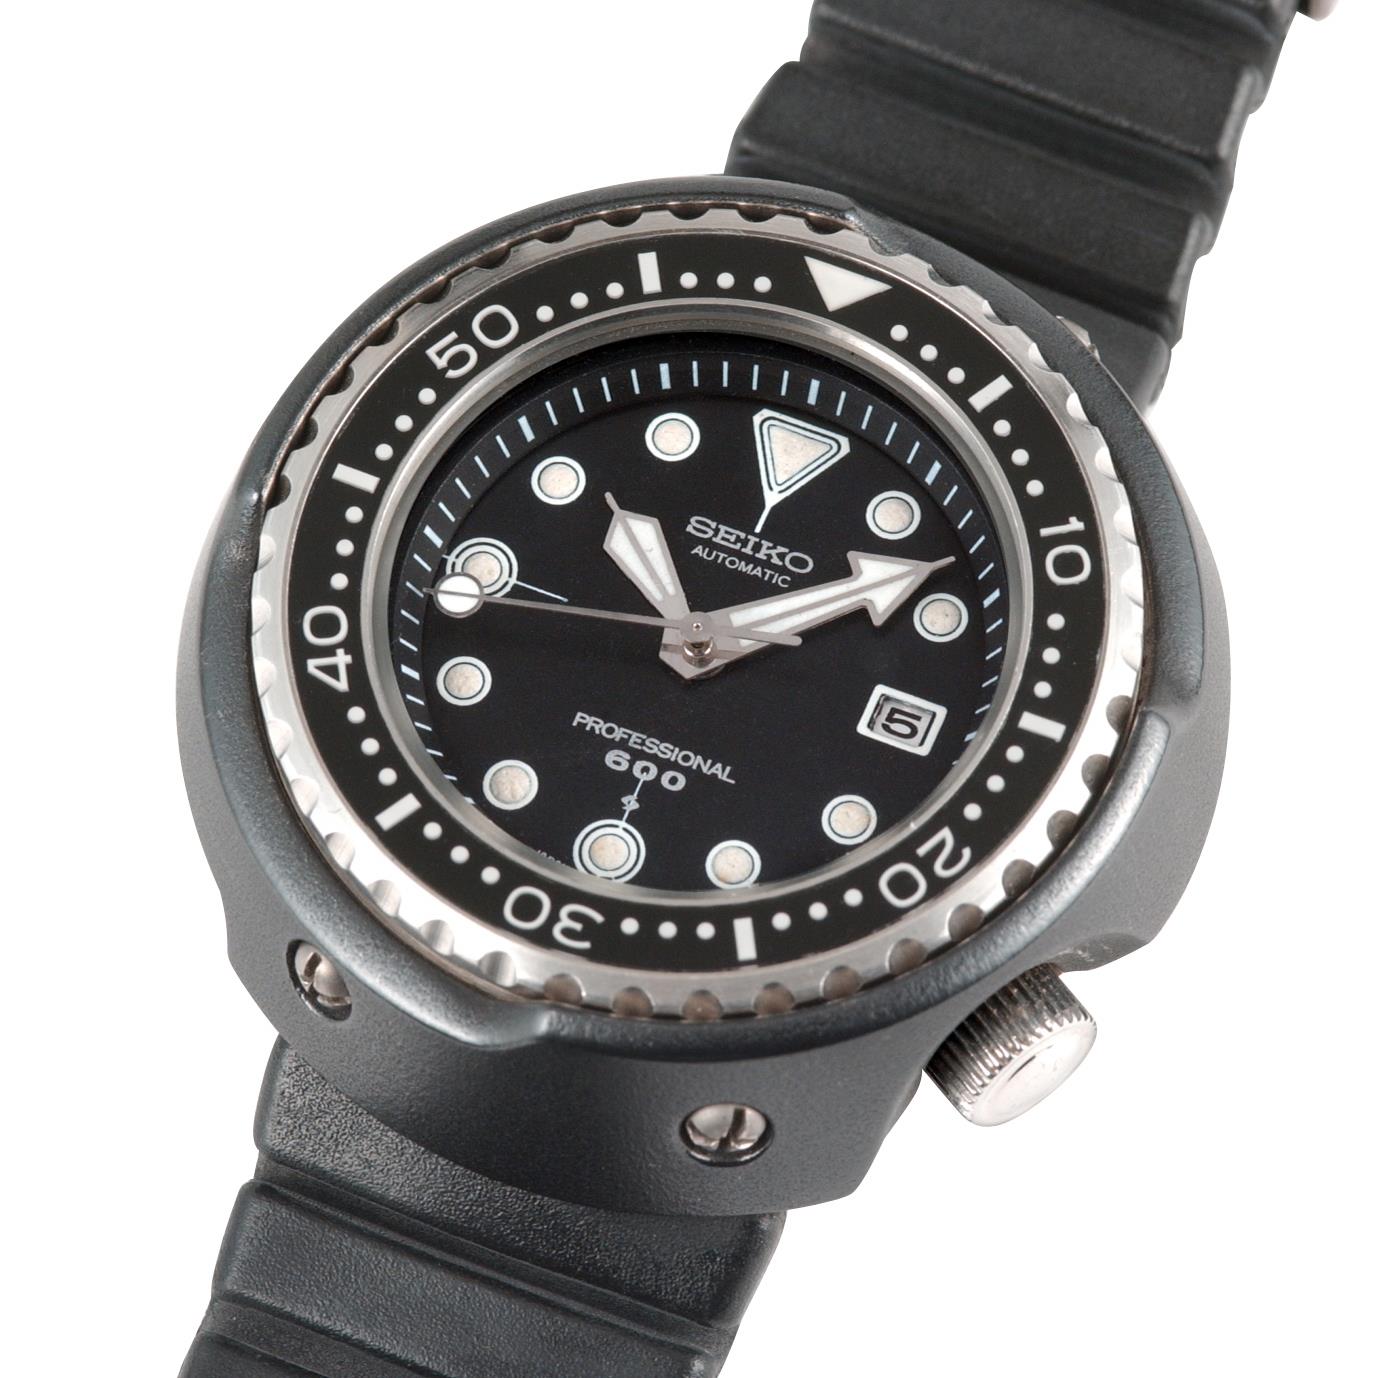 19a75_ProfessionalDivers600m_primo orologio subacqueo al mondo con cassa in titanio